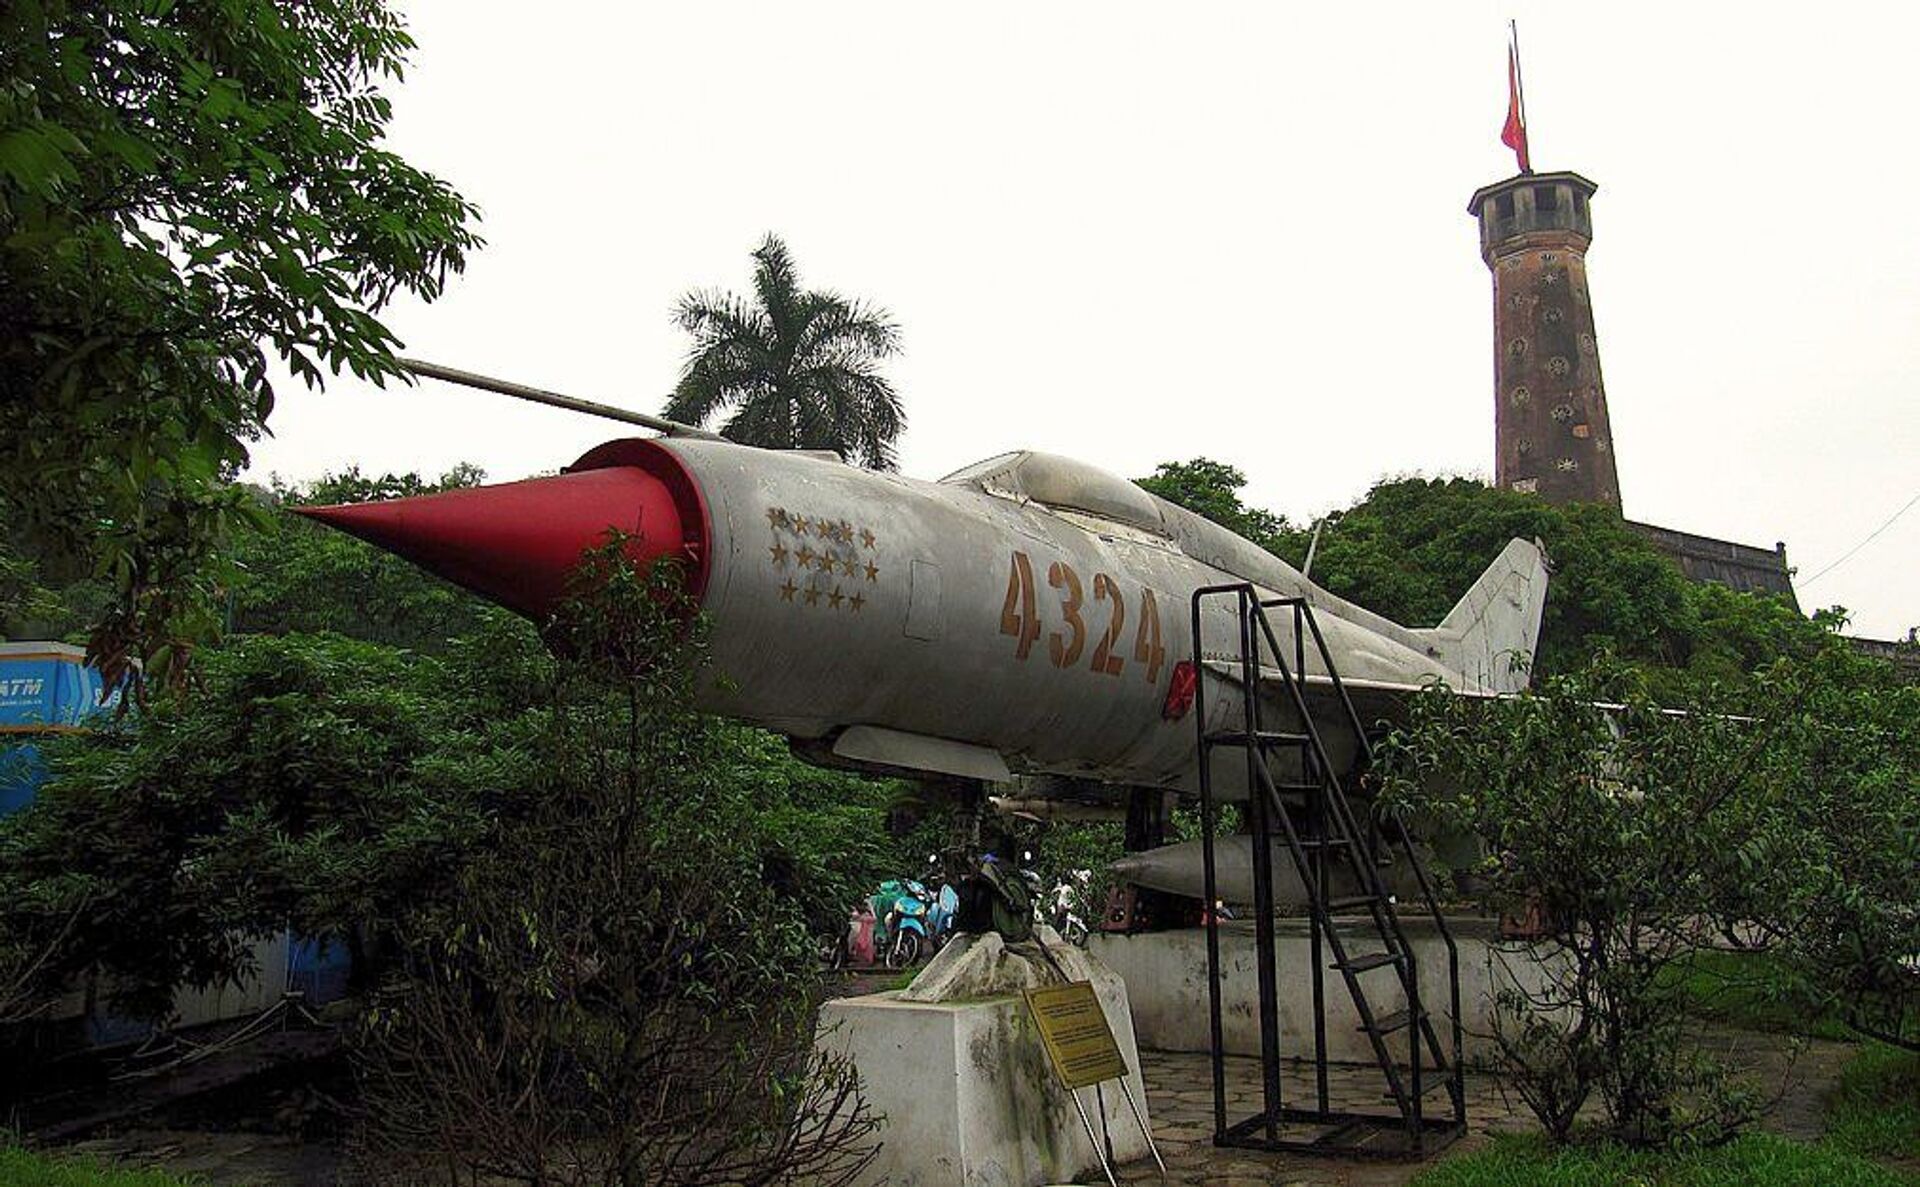 Giống MiG-21 ở Việt Nam: Xướng danh vũ khí Nga khiến kẻ thù khiếp sợ - Sputnik Việt Nam, 1920, 31.05.2021